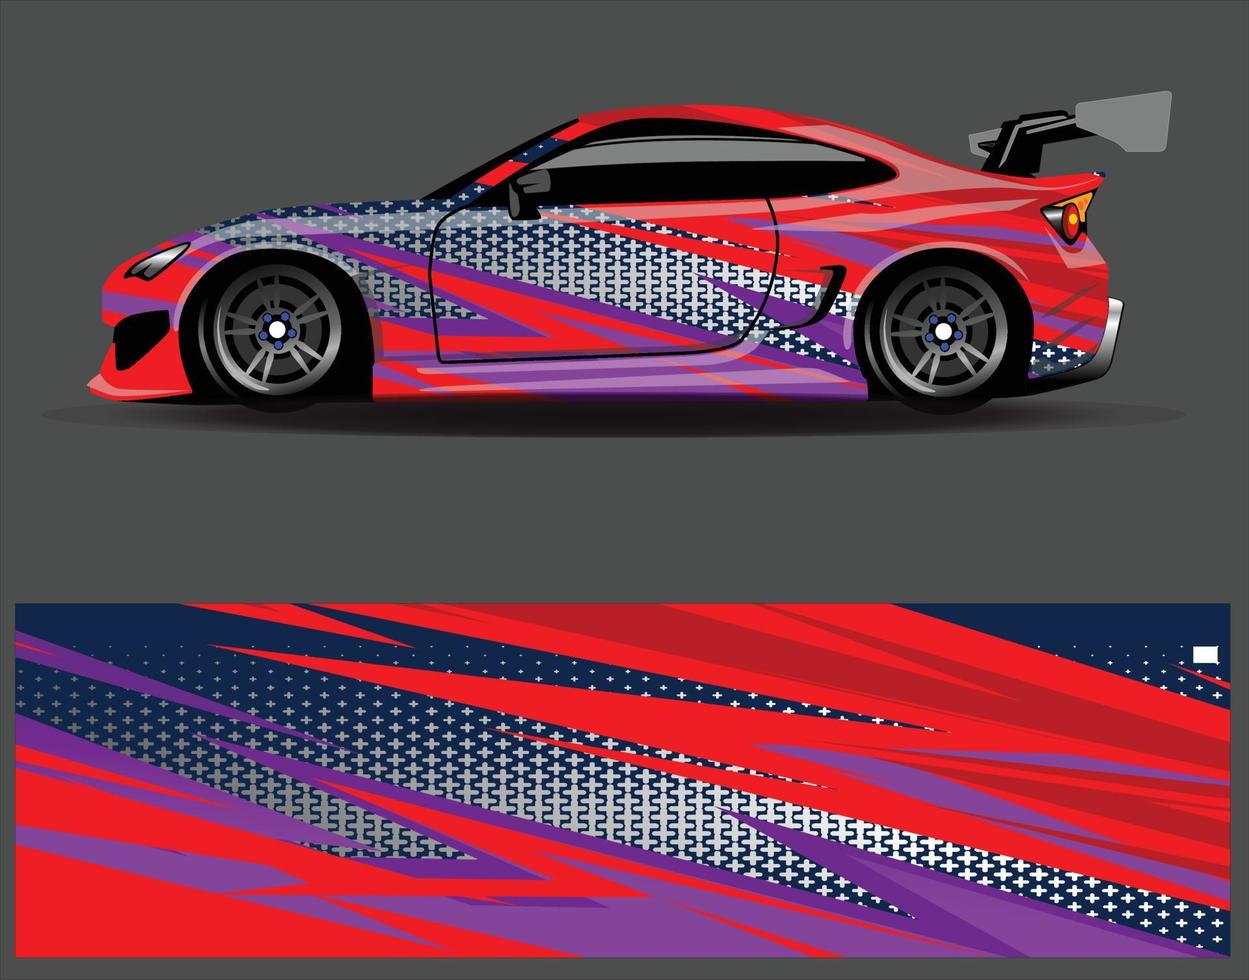 Auto Wrap Aufkleber Vinyl Aufkleber Designs Konzept. Geometrischer Streifen-Tigerhintergrund des Autodesigns für Wrap-Fahrzeuge, Rennwagen, Transporter und Lackierungen vektor